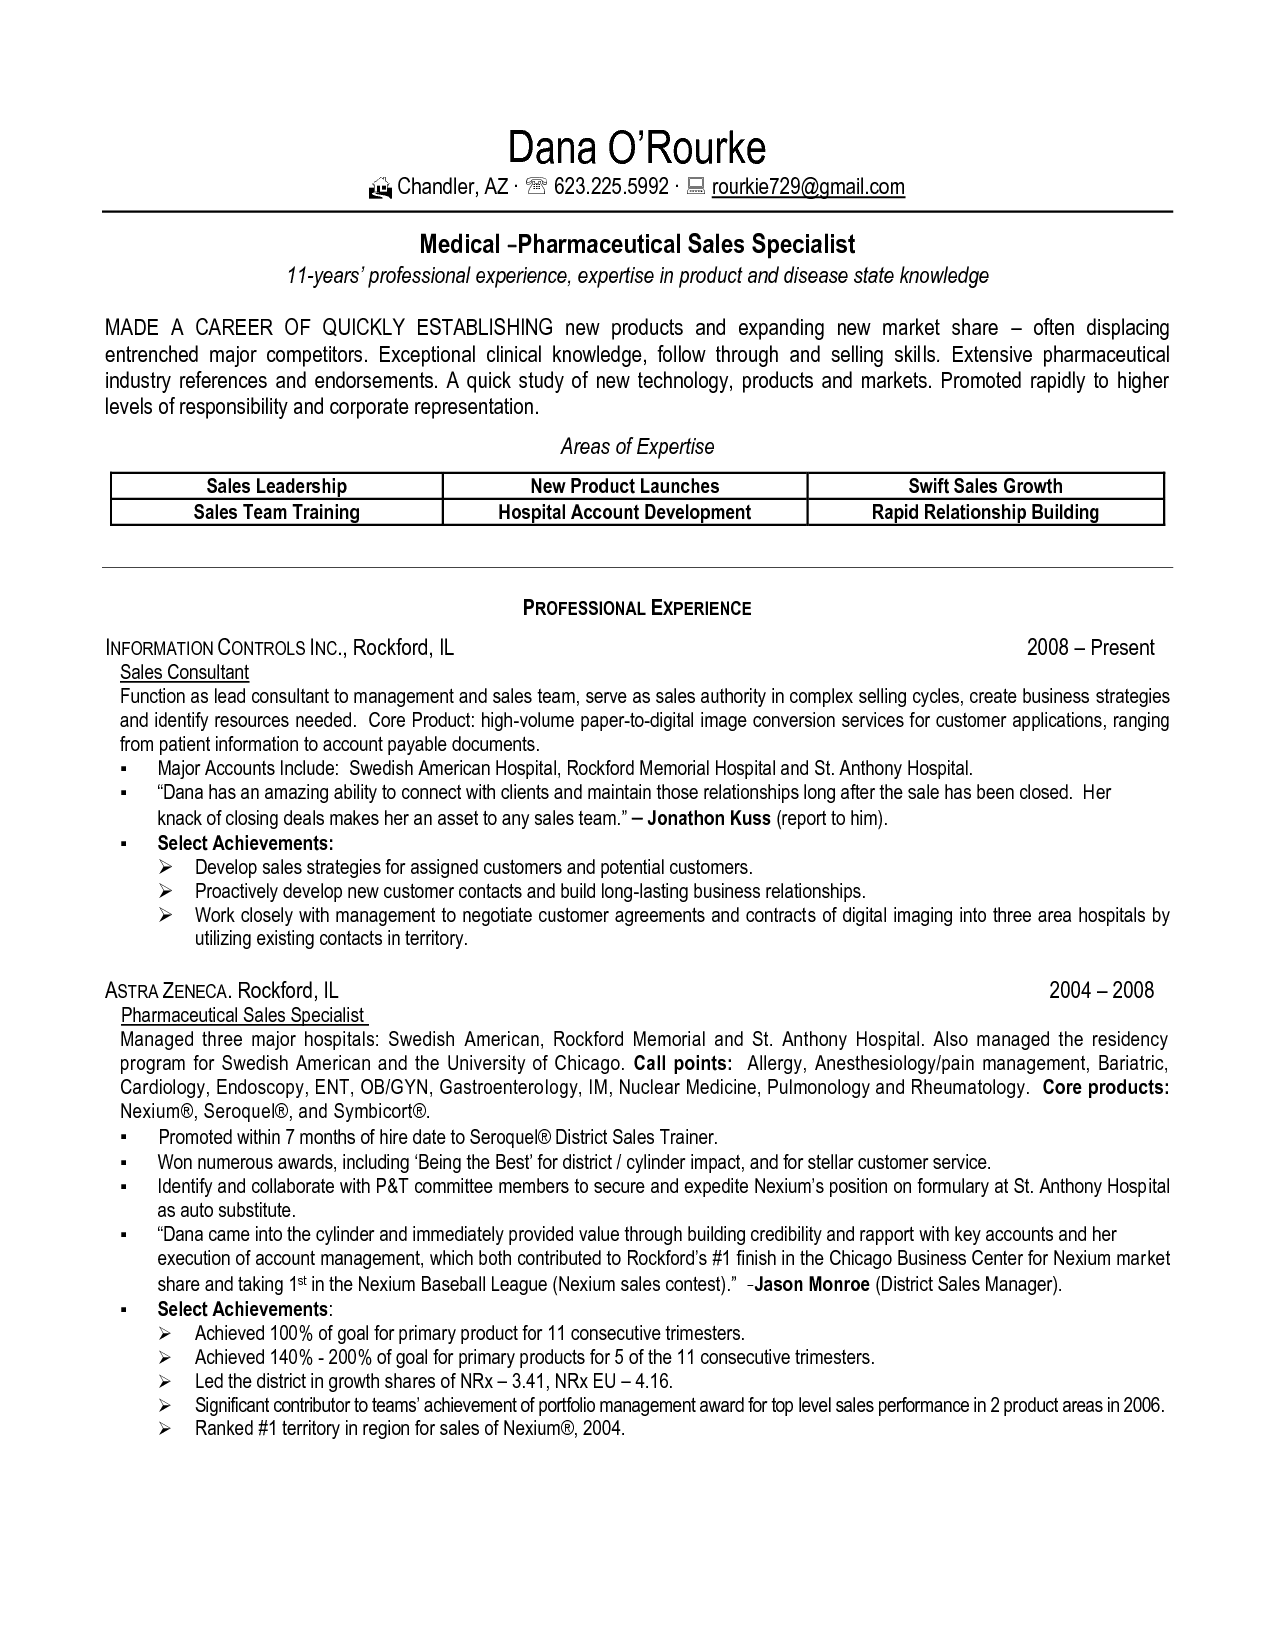 Sample Resume For Pharmaceutical Industry